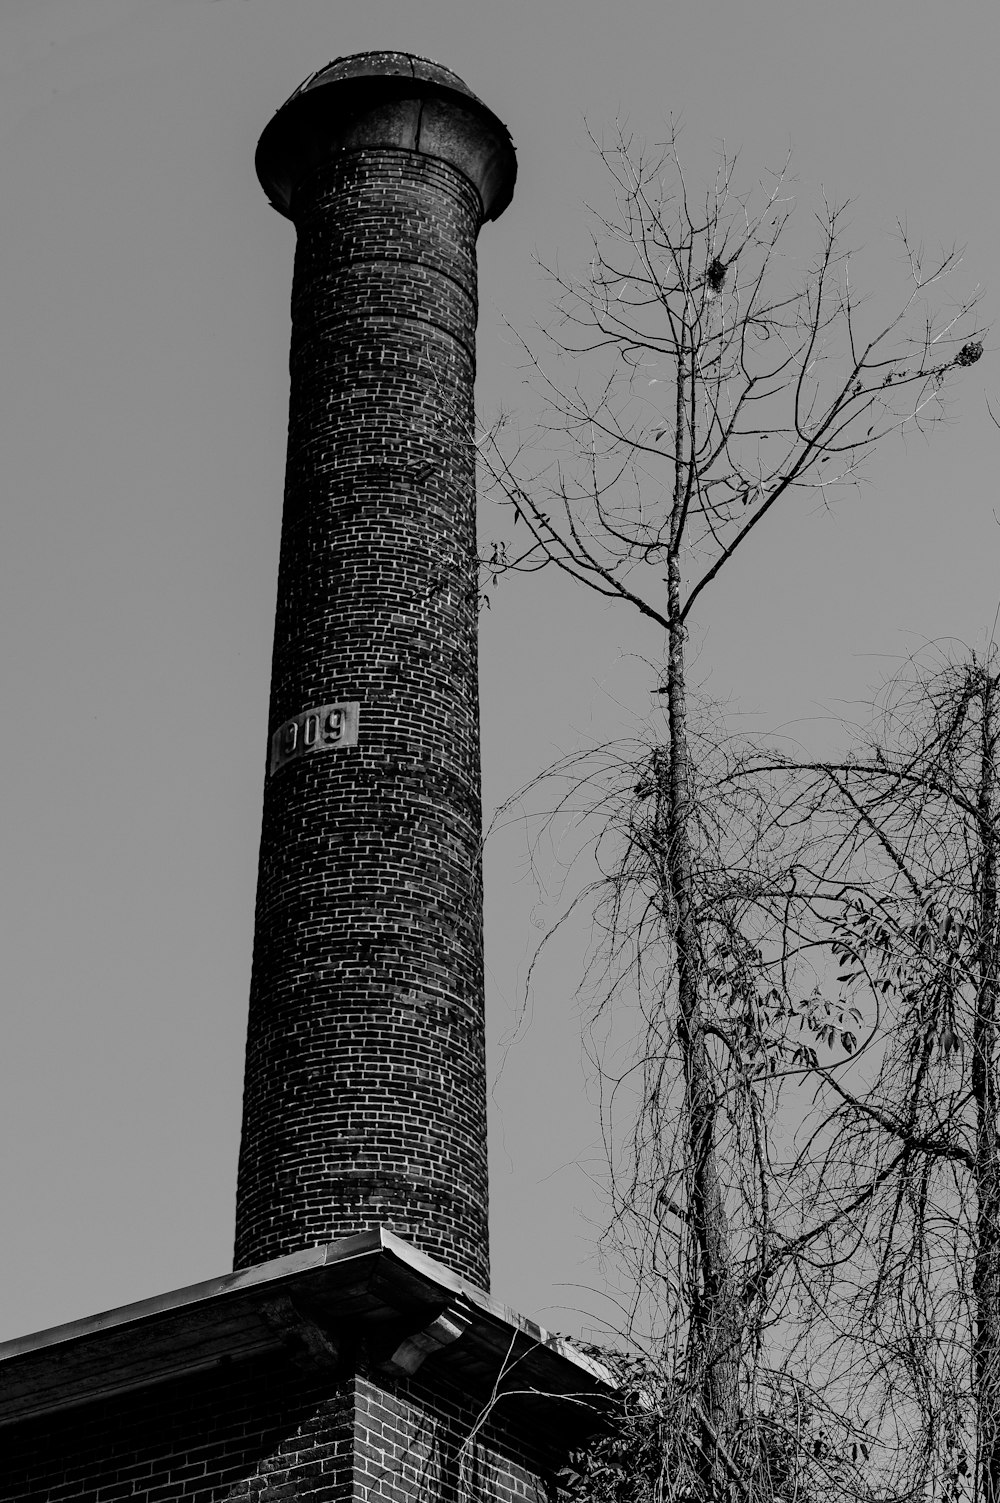 裸の木のグレースケール写真